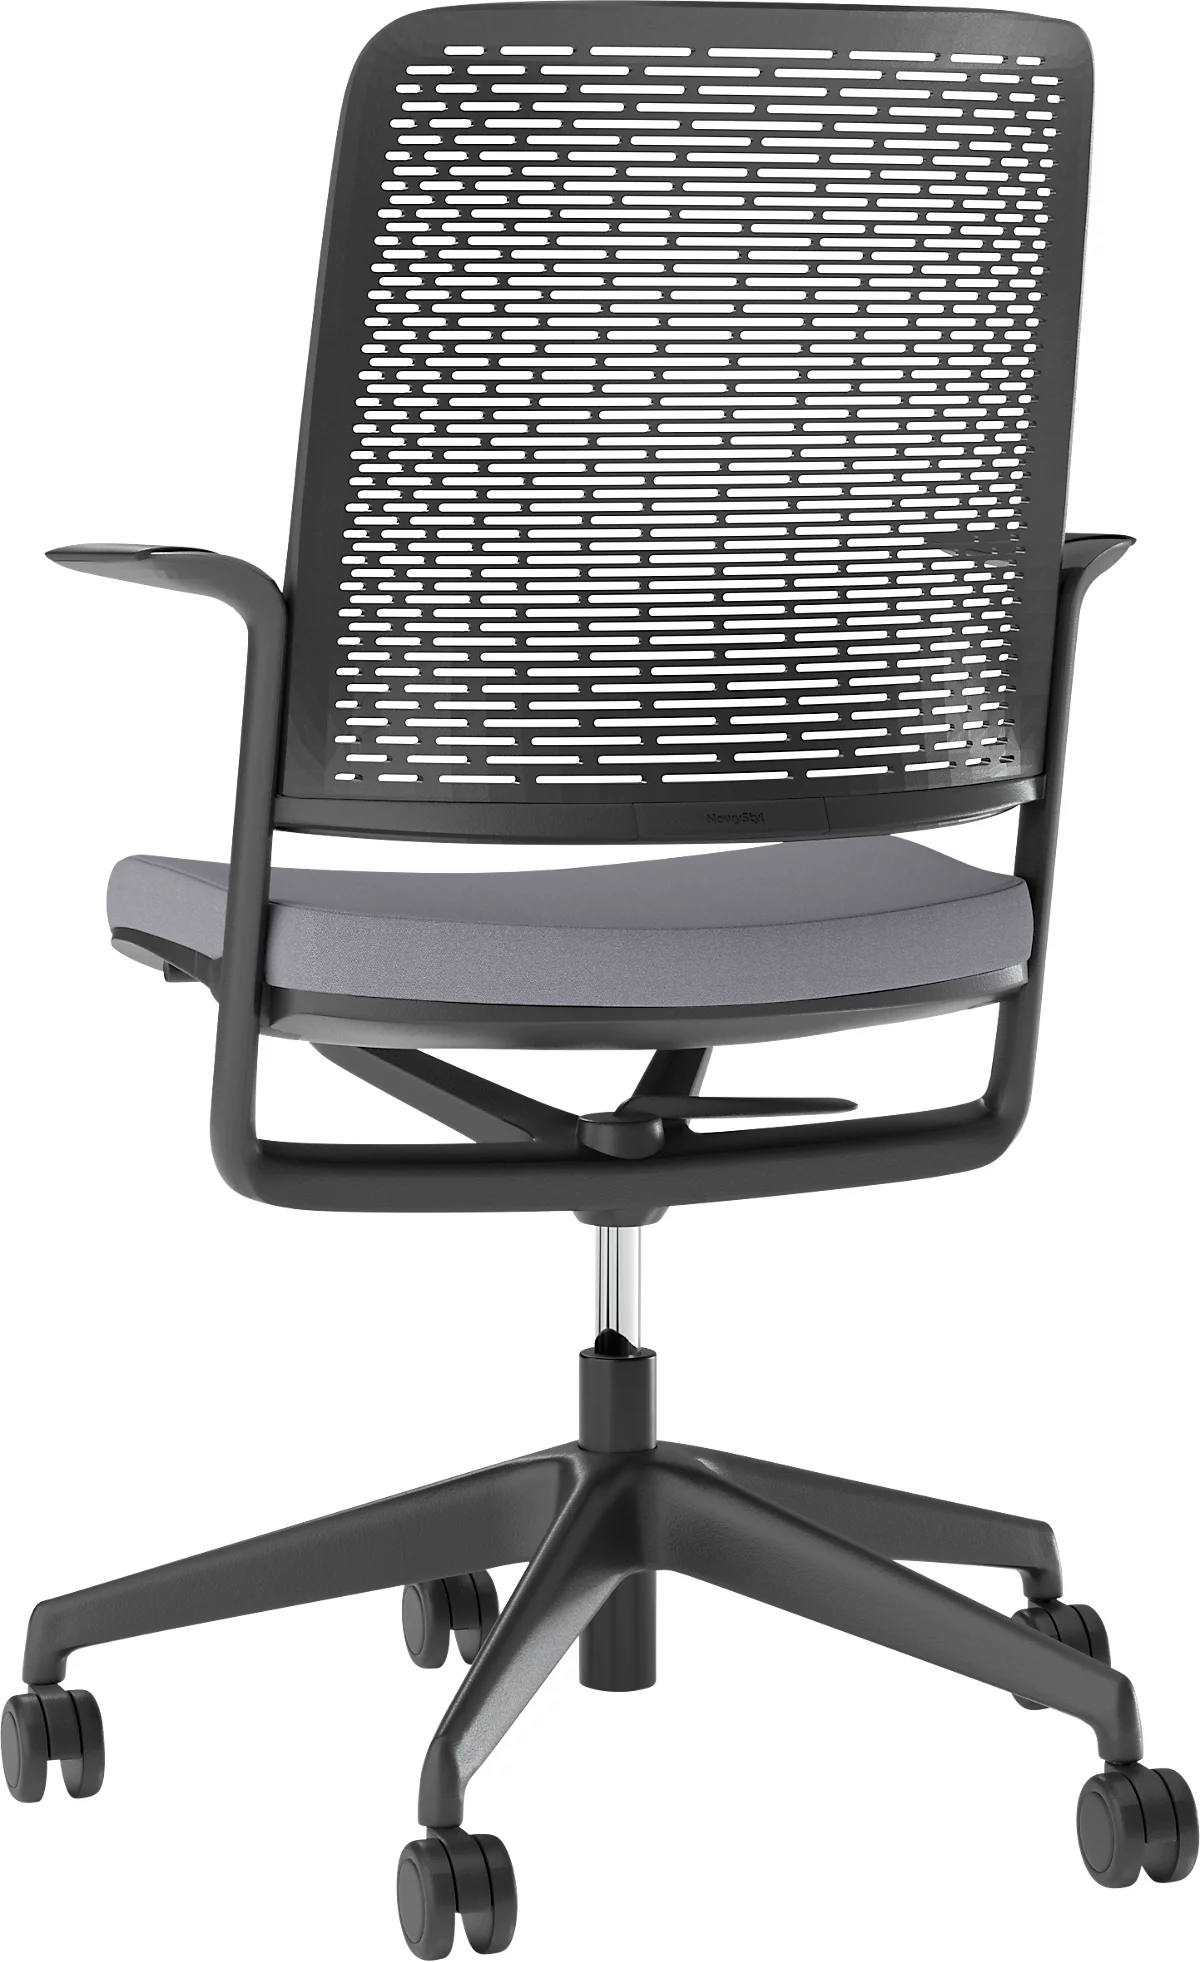 Bürostuhl WithMe, mit Armlehnen, Auto-Synchronmechanik, Flachsitz, perforierter Kunststoffrücken, abnehmbarer Sitzbezug, schwarz/grau